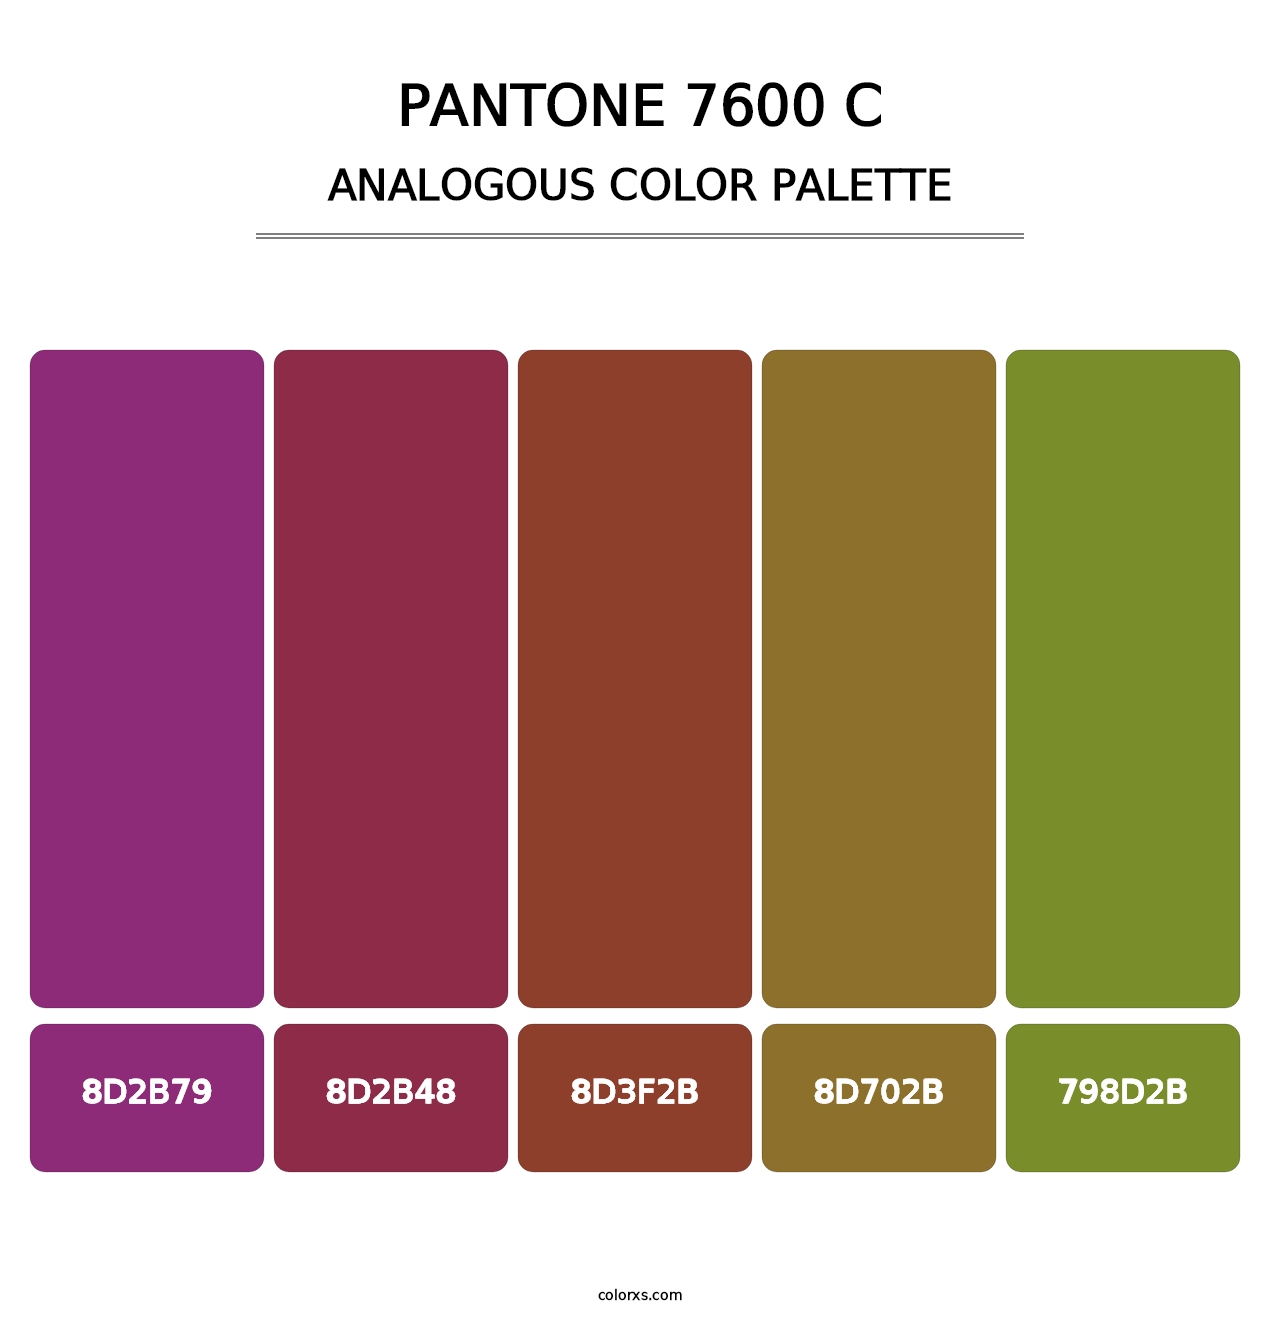 PANTONE 7600 C - Analogous Color Palette